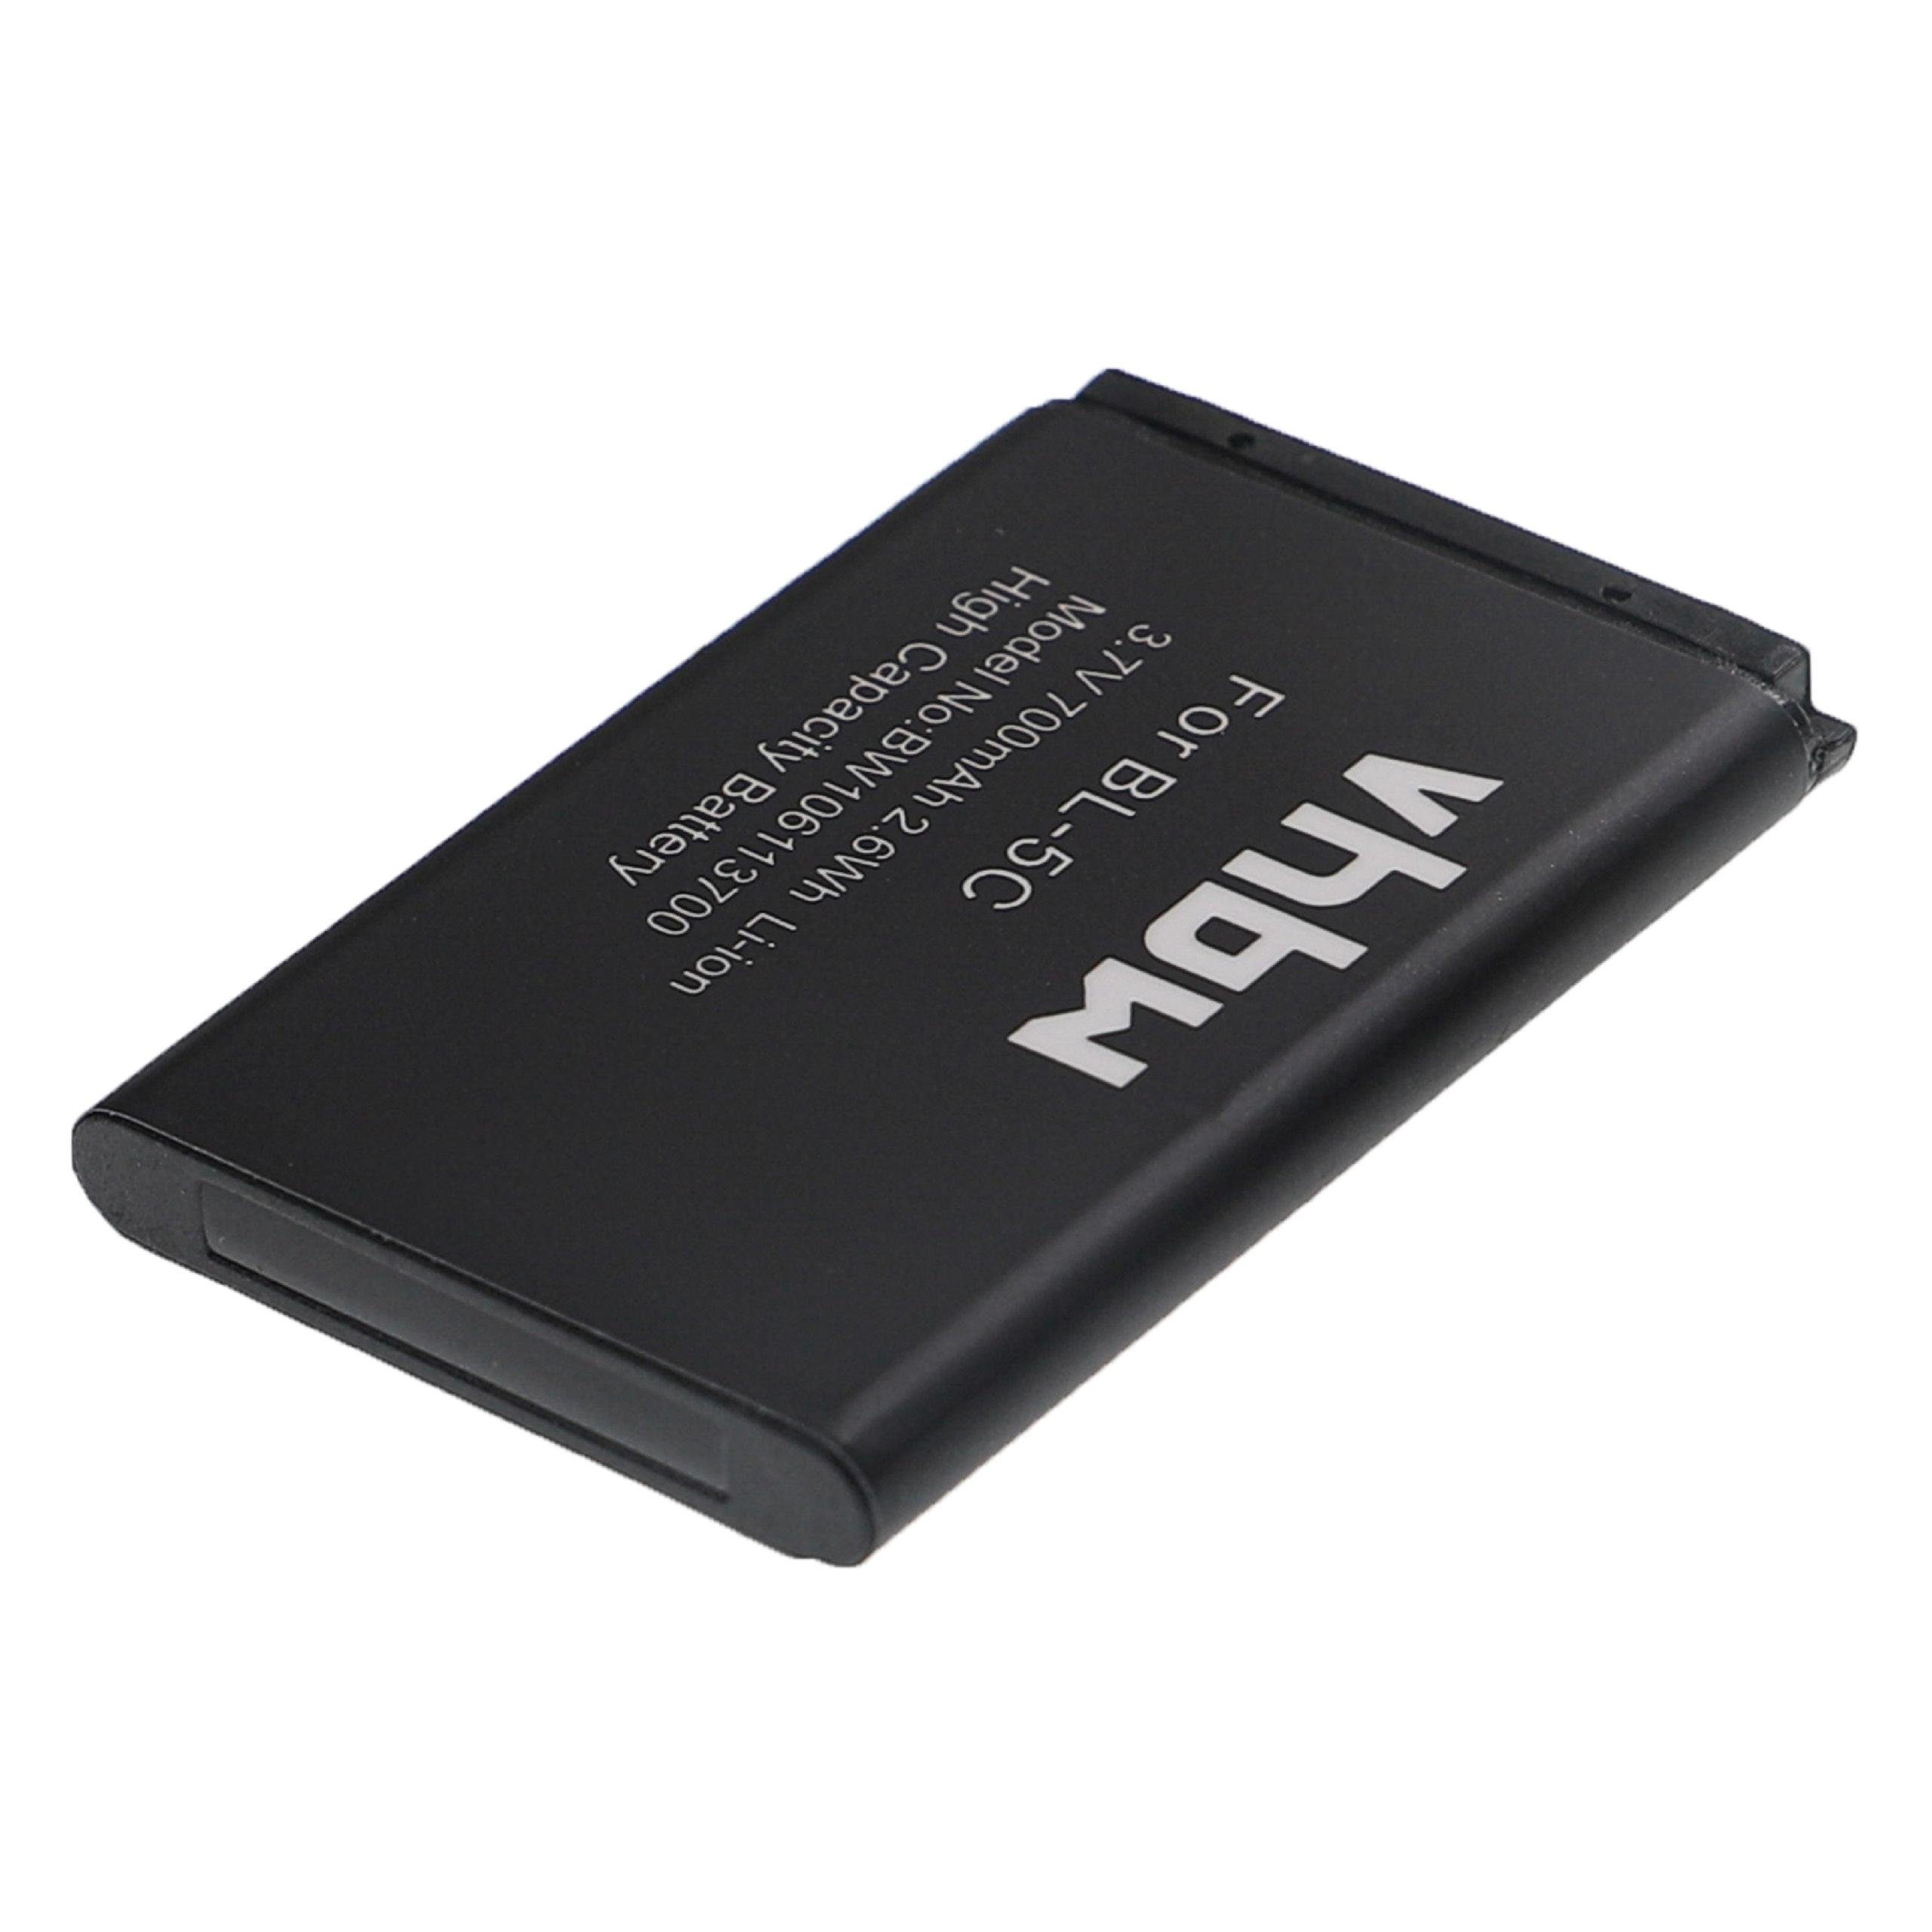 vhbw kompatibel mit Hqrs 777 (3,7 V) Li-Ion 700 mAh Smartphone-Akku